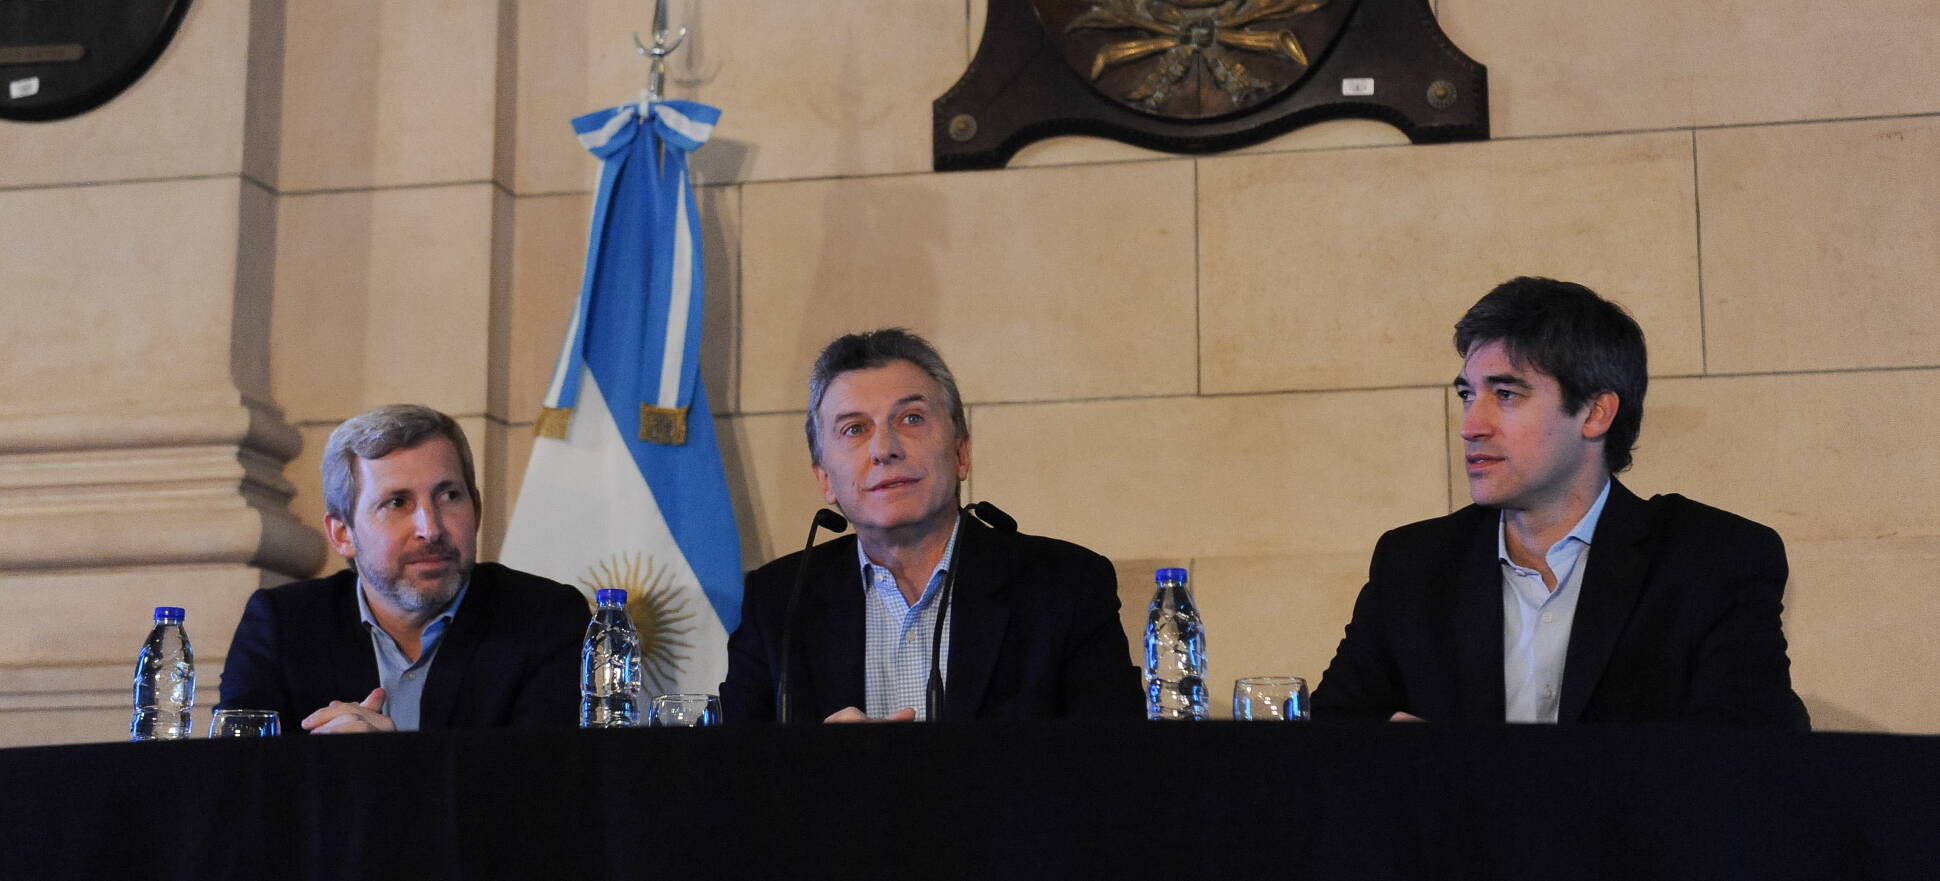 El presidente Macri presentó el proyecto de Reforma Política